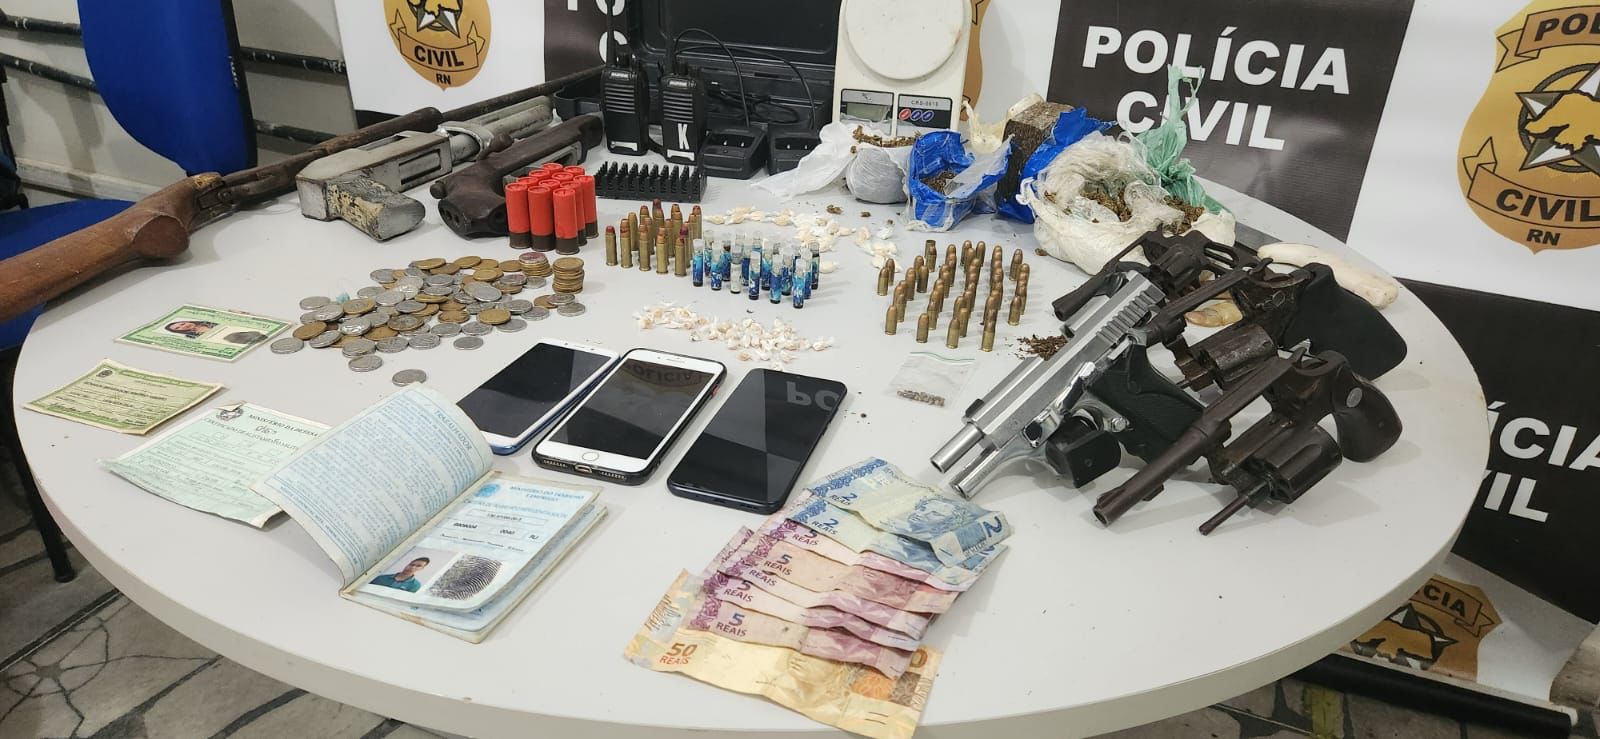 Polícia Civil prende suspeito por posse ilegal de arma e tráfico de droga no RN